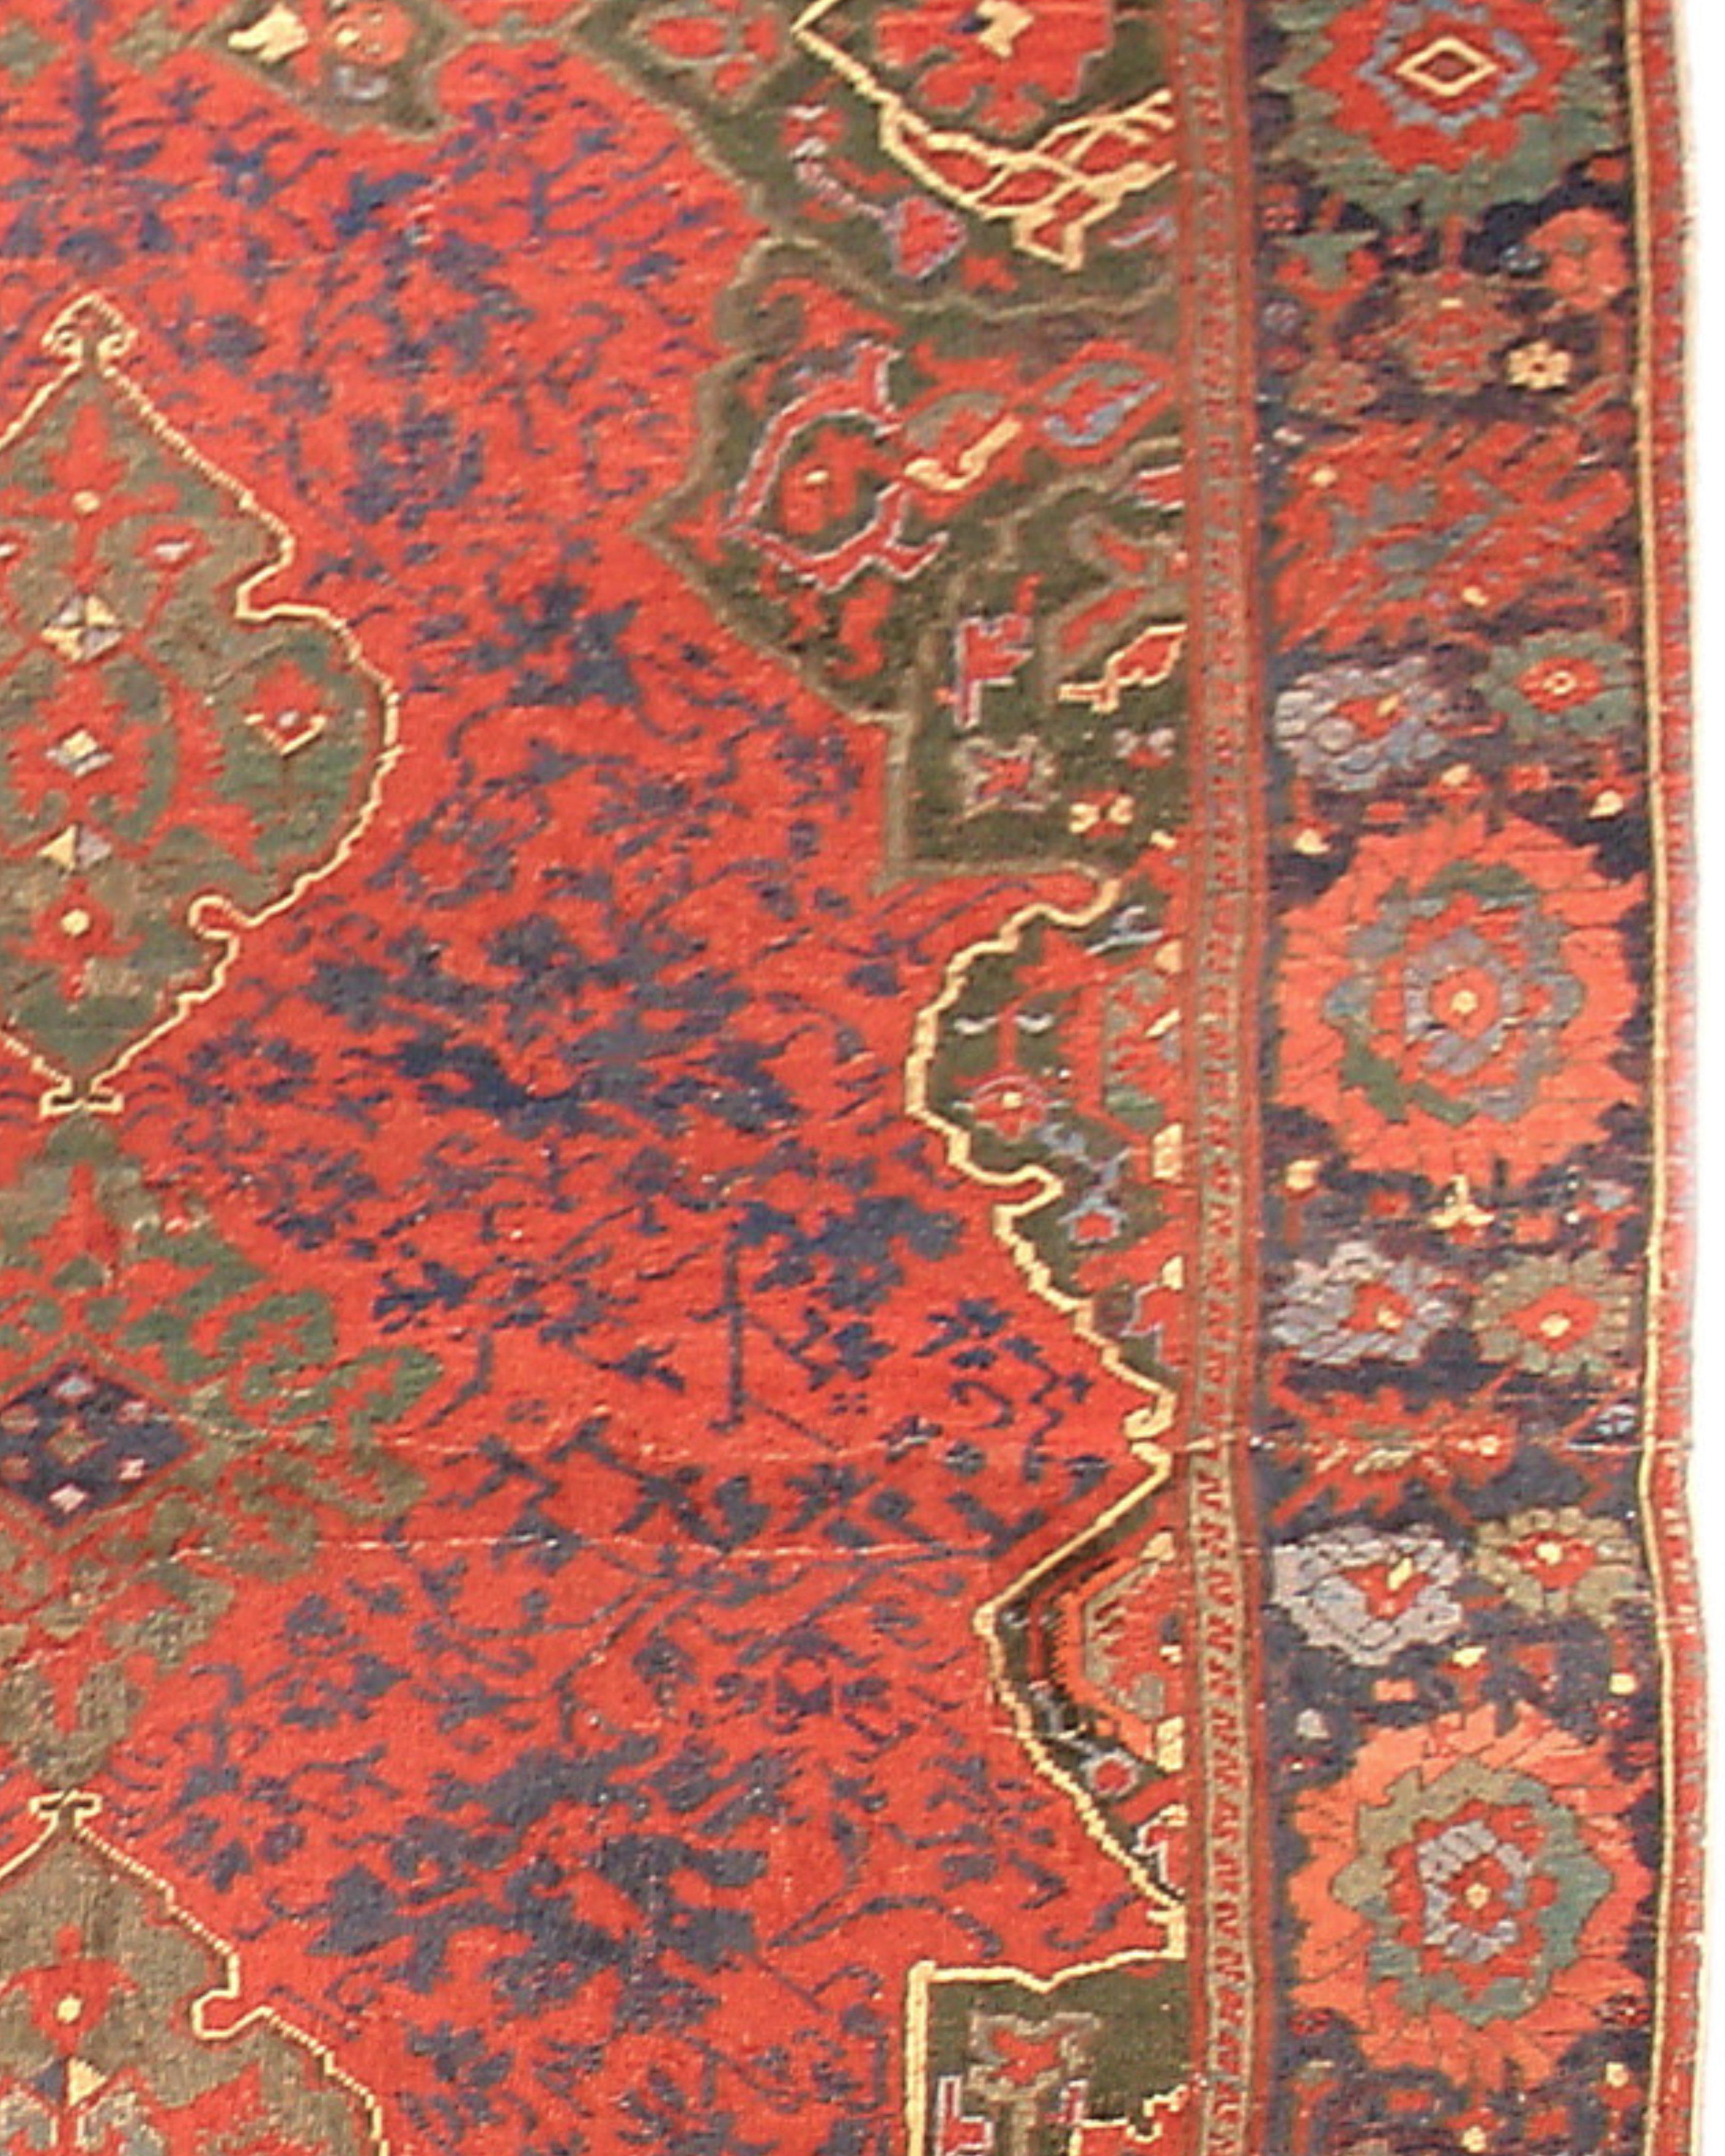 Ancien tapis turc Oushak, fin du 17e siècle

Informations supplémentaires :
Dimensions : 6'4